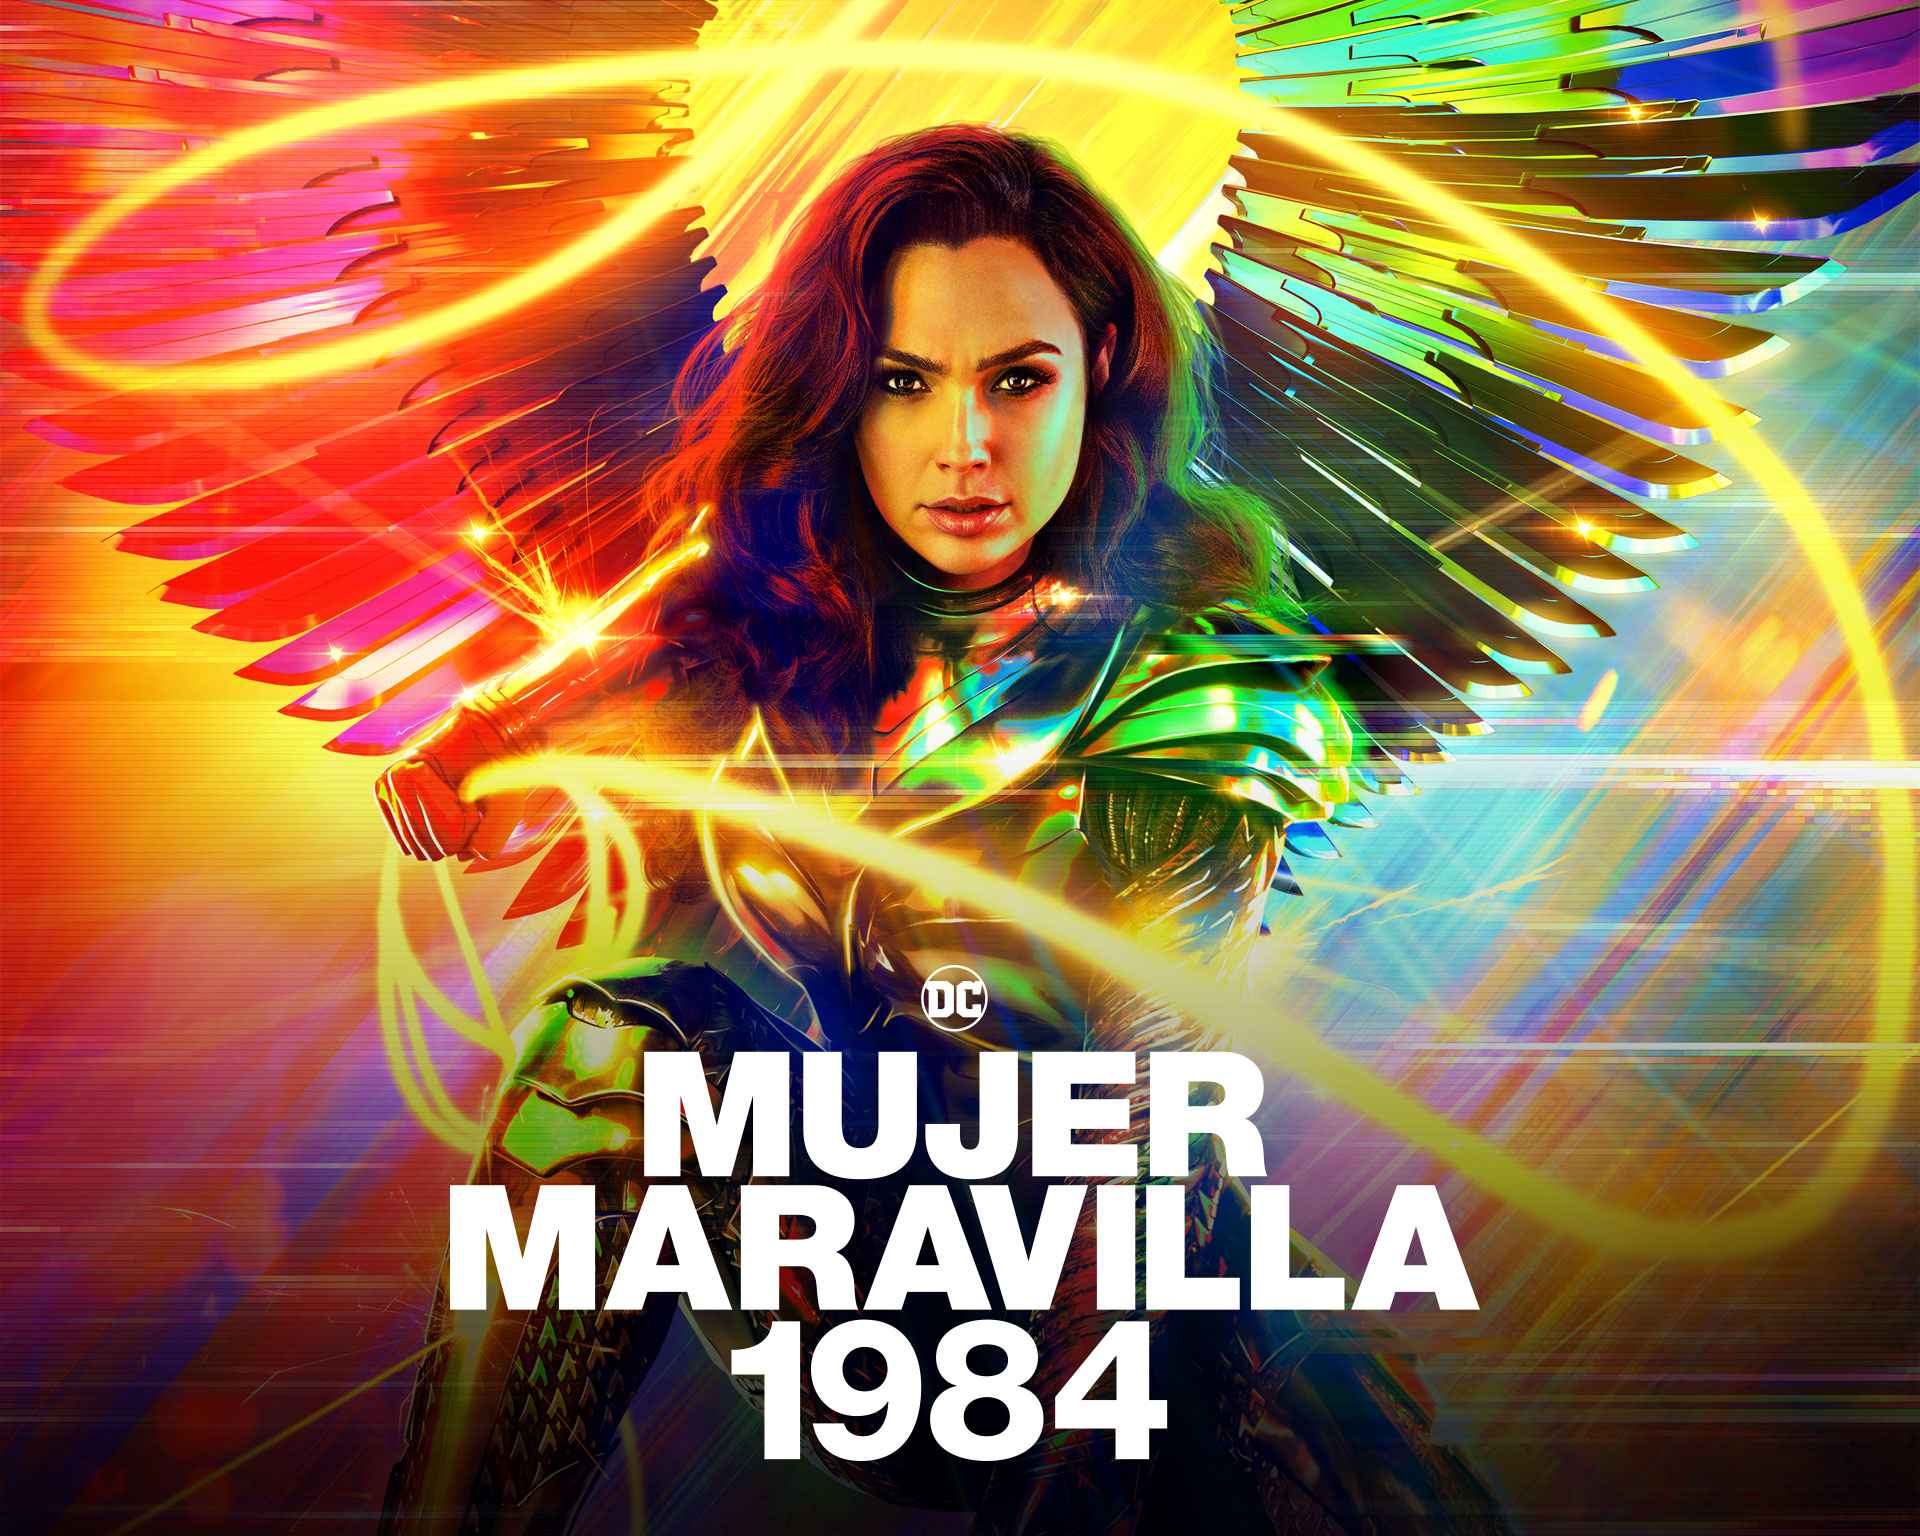 ¿Dónde puedo ver la película completa "Mujer Maravilla 1984" en español latino?